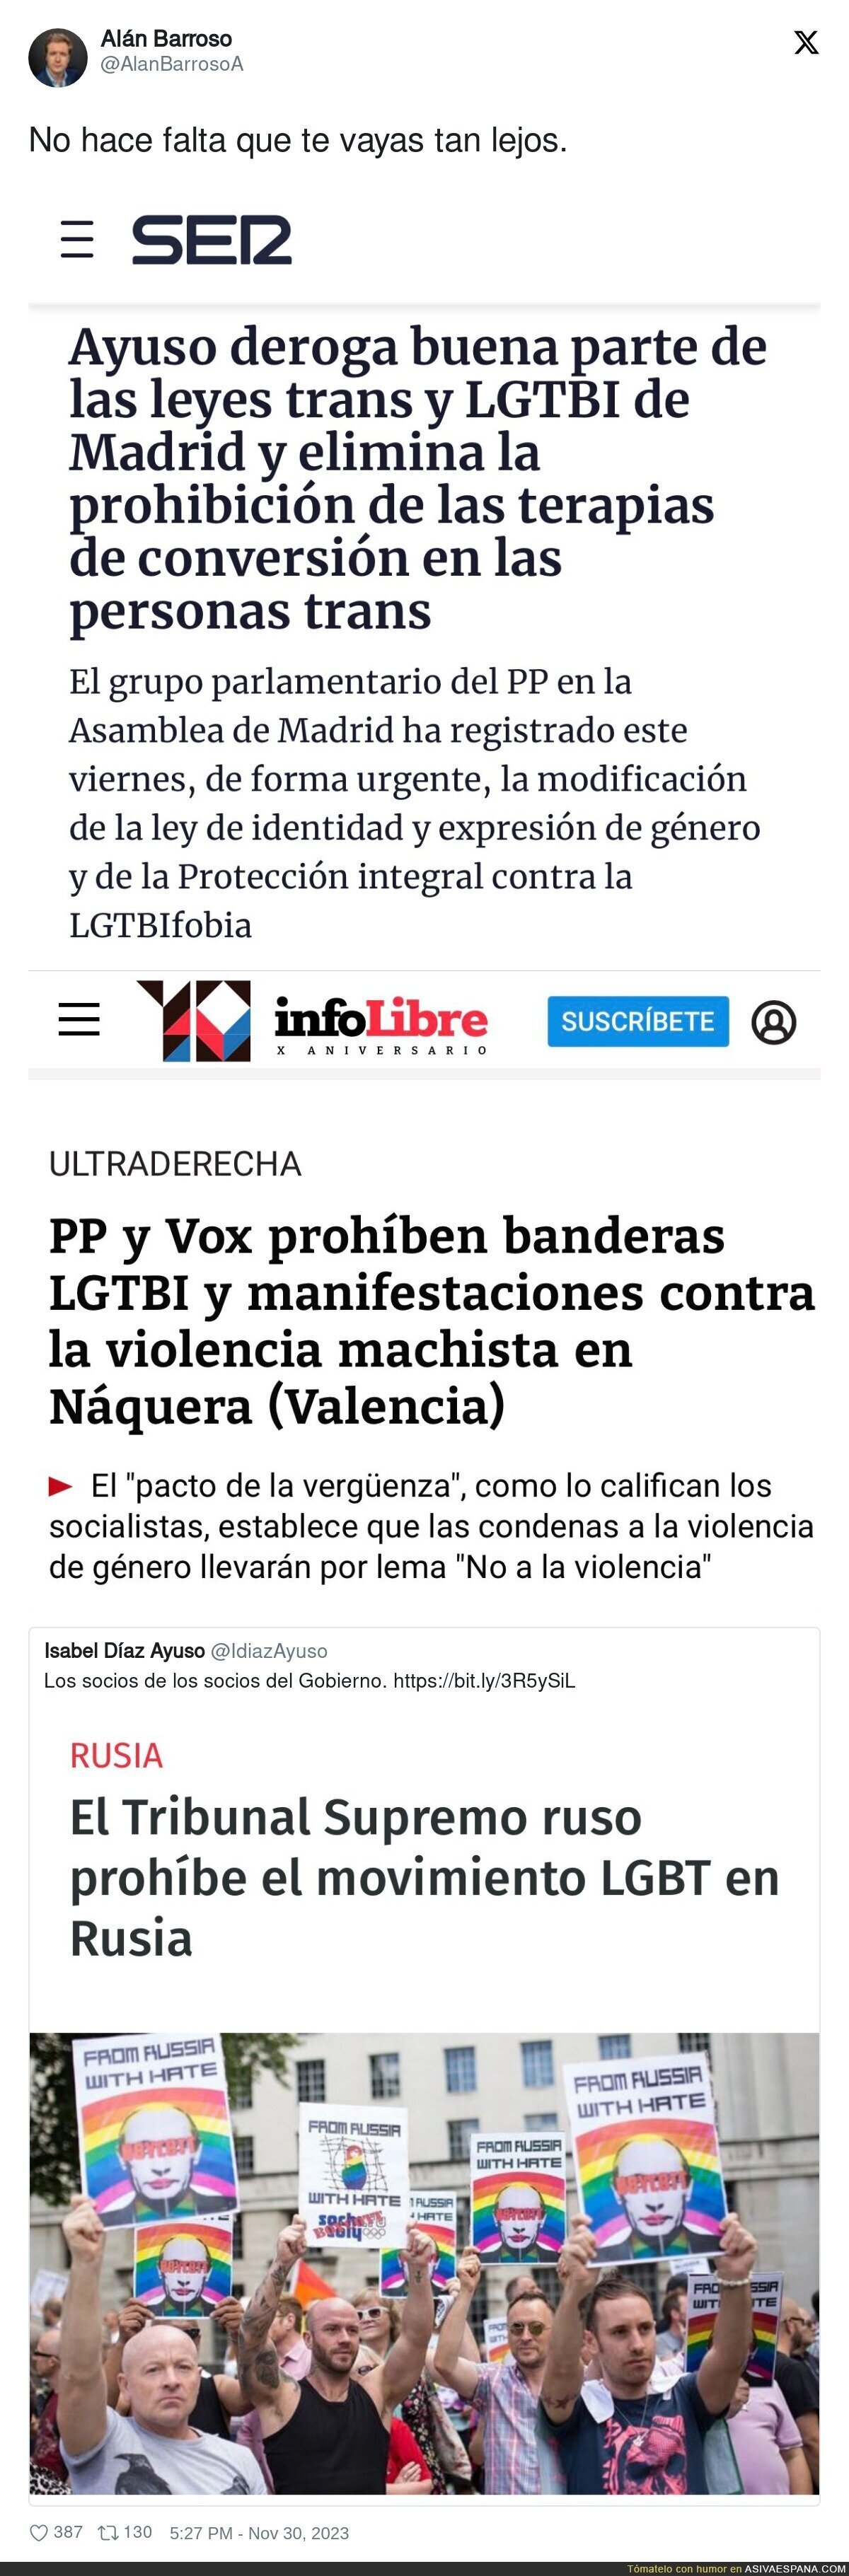 Isabel Díaz Ayuso denuncia que Rusia prohíbe el movimiento LGBT mientras hace esto en Madrid